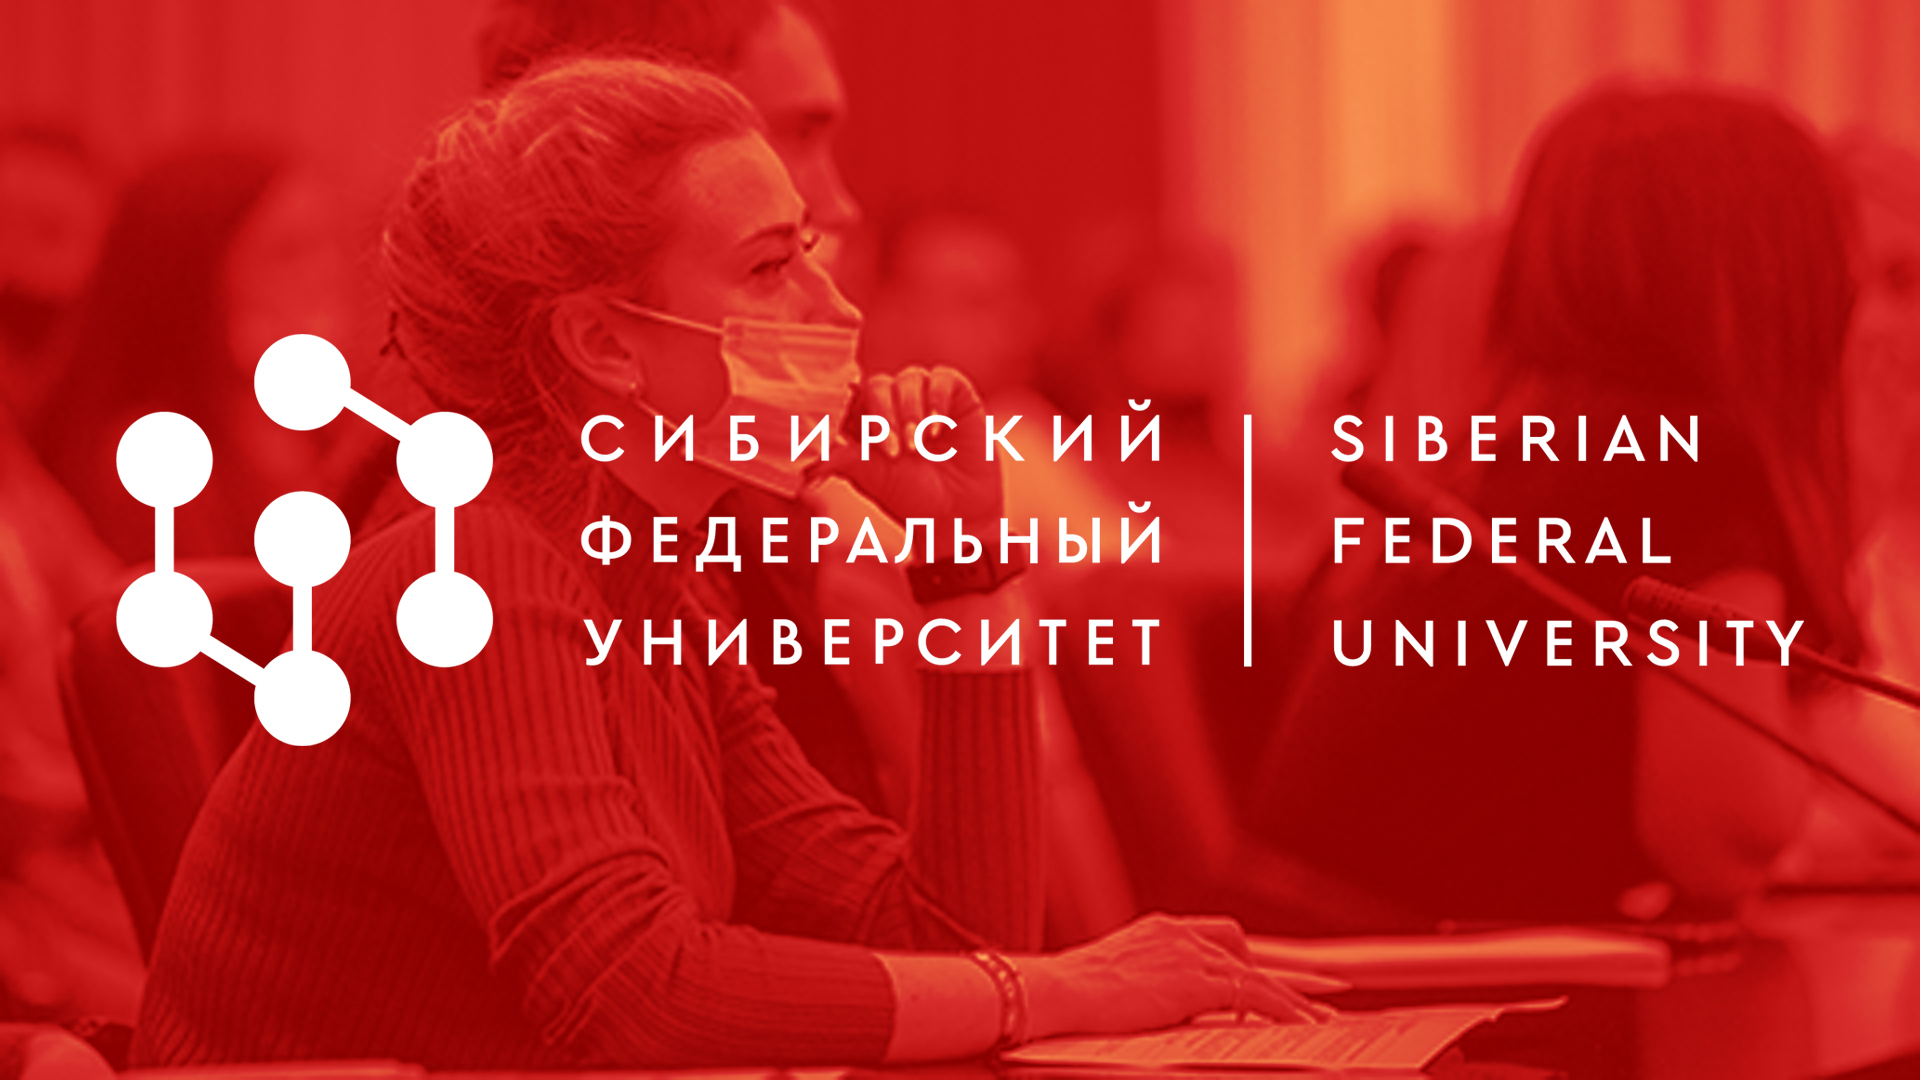 Центр оценки и развития управленческих компетенций на базе Сибирского федерального университета